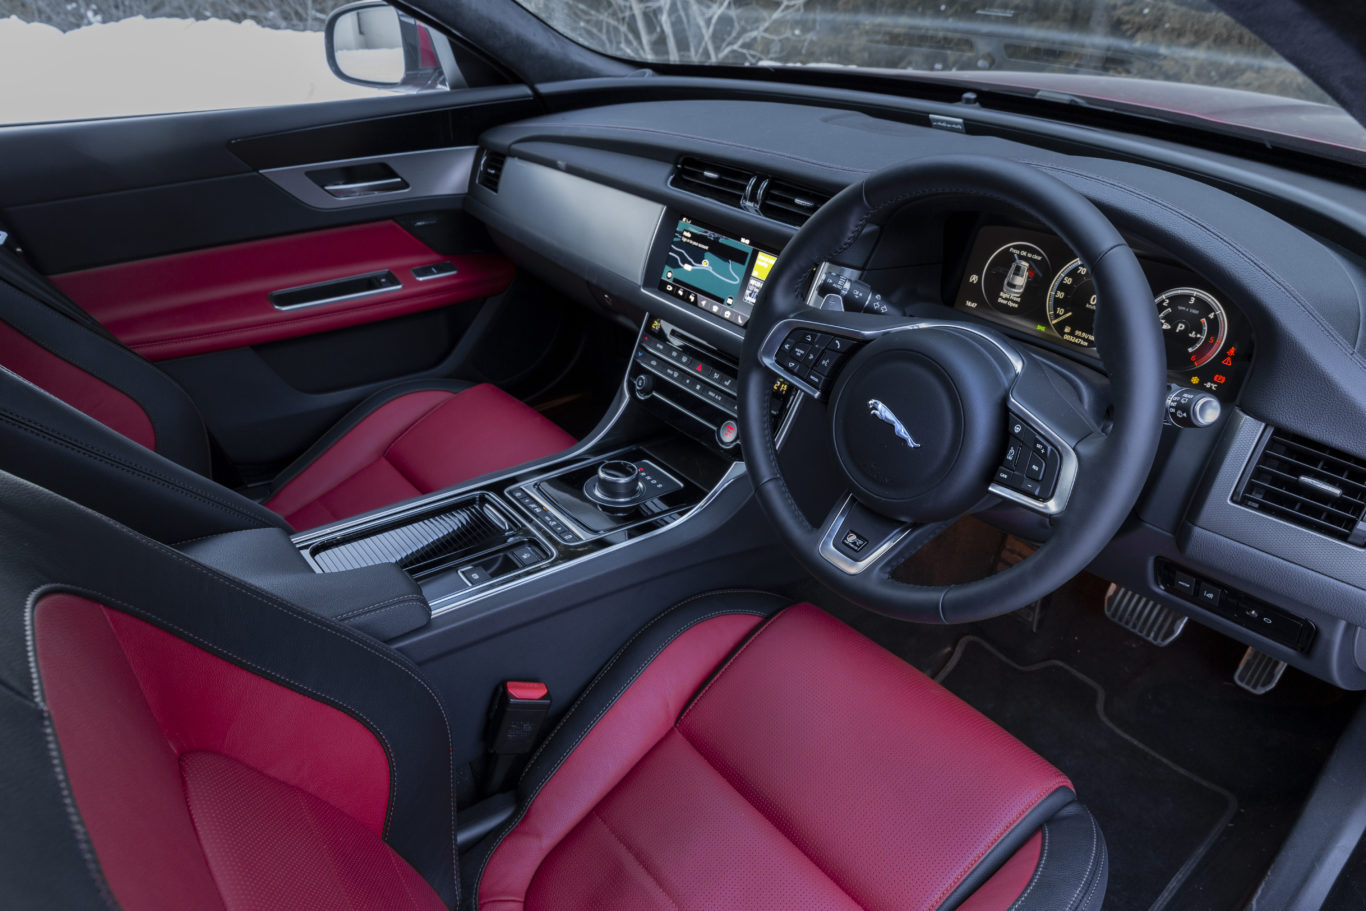 The Jaguar's interior looks and feels premium